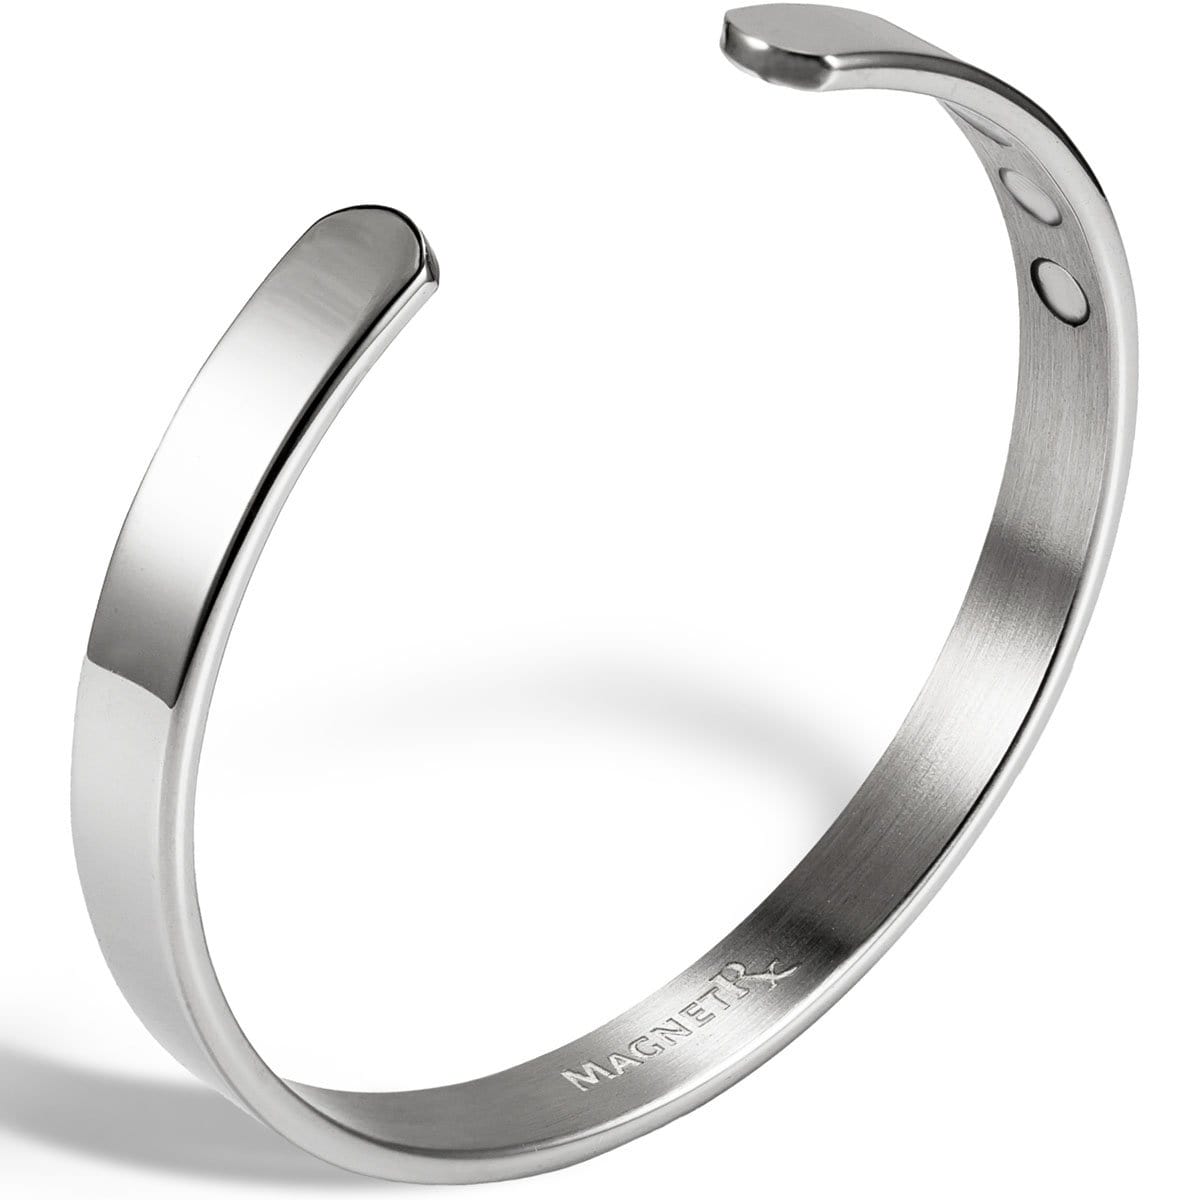 Men’s Magnetic Bracelet Cuff (Polished Silver)